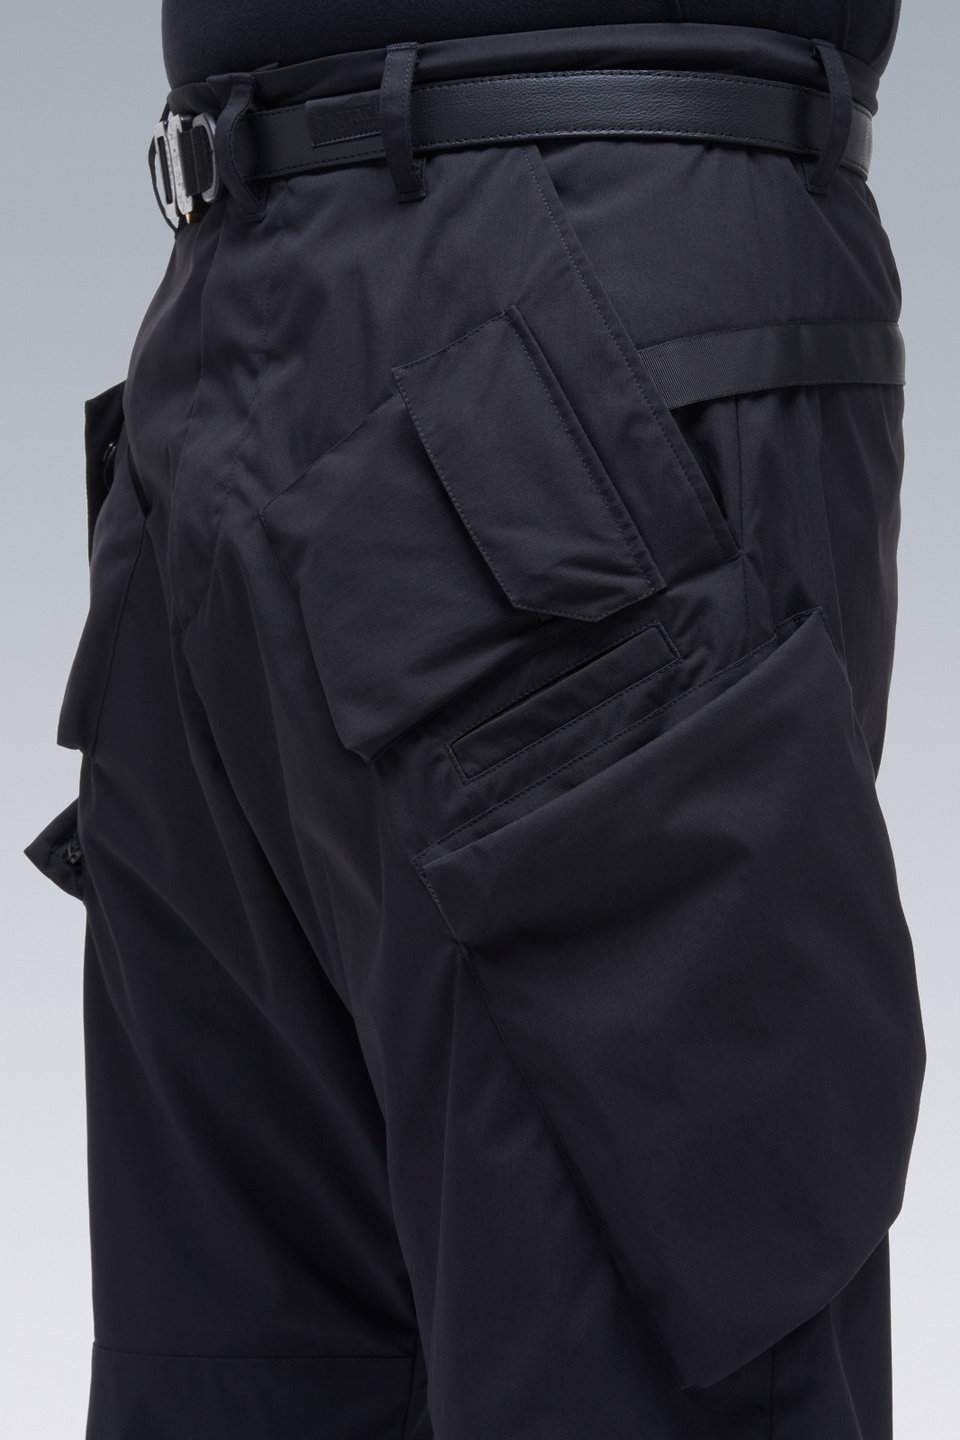 P24A-E Encapsulated Nylon Articulated BDU Trouser Black - 16